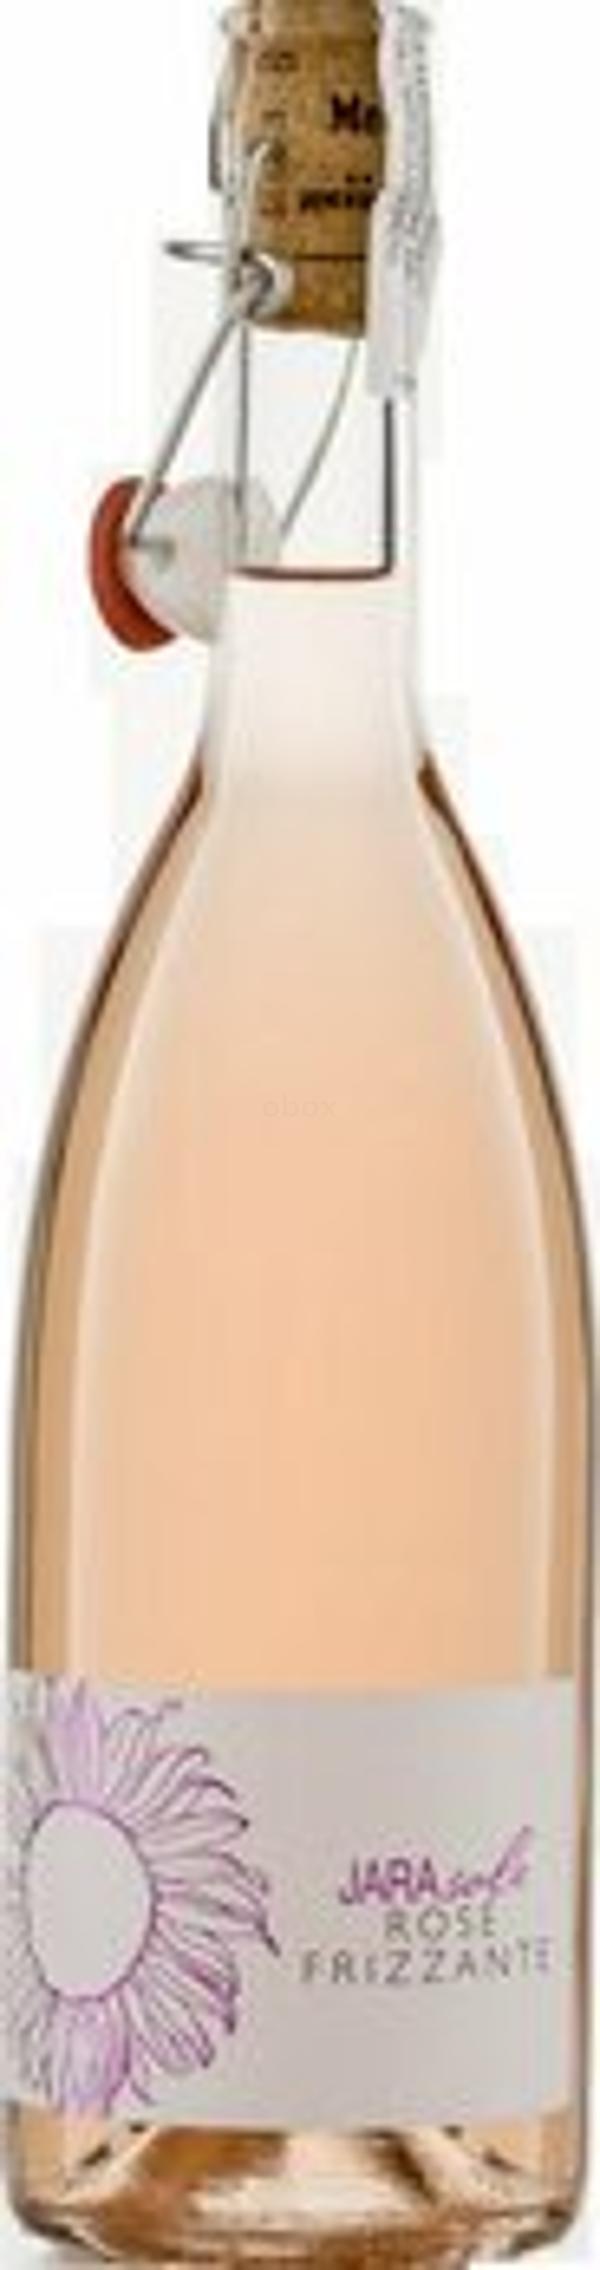 Produktfoto zu Rosé Frizzante 'Jarasole' Bügelverschluss IGT, halbtrocken 0,75l